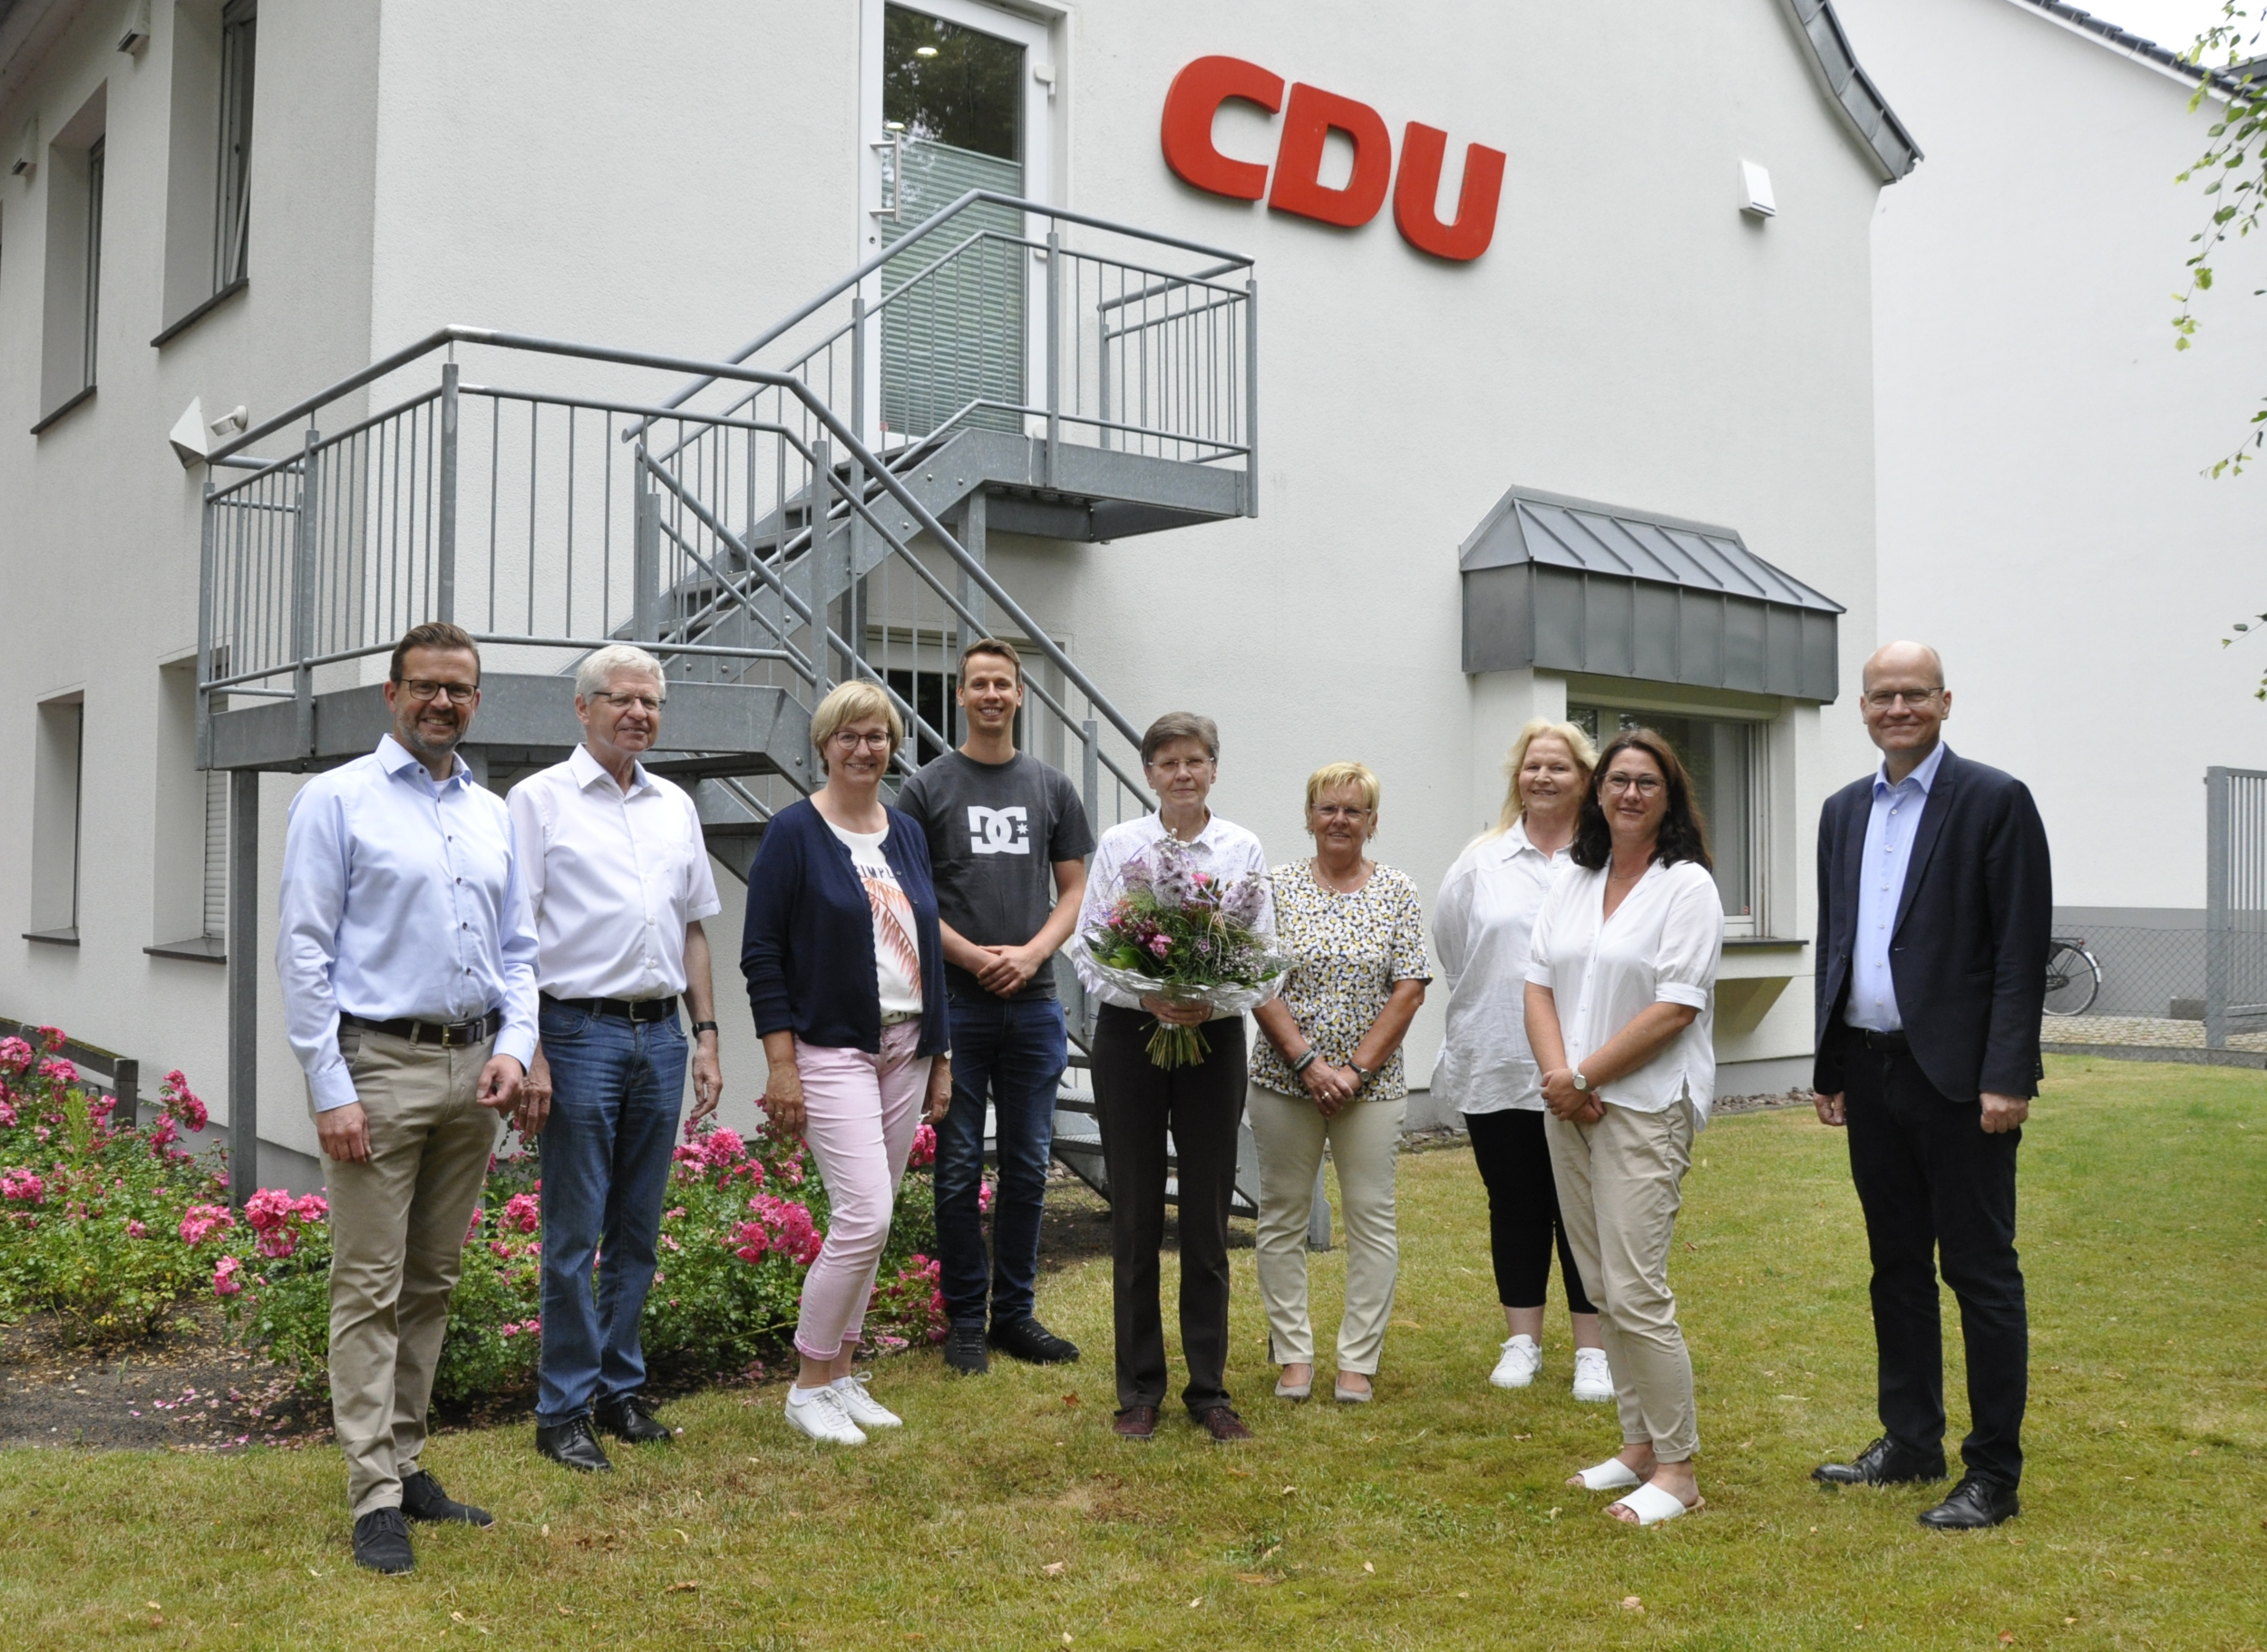 Margot Lohmeyer (Mitte) bei ihrer Verabschiedung zusammen mit den Abgeordneten und der Belegschaft der Kreisgeschäftsstelle im Garten des Konrad-Adenauer-Hauses.